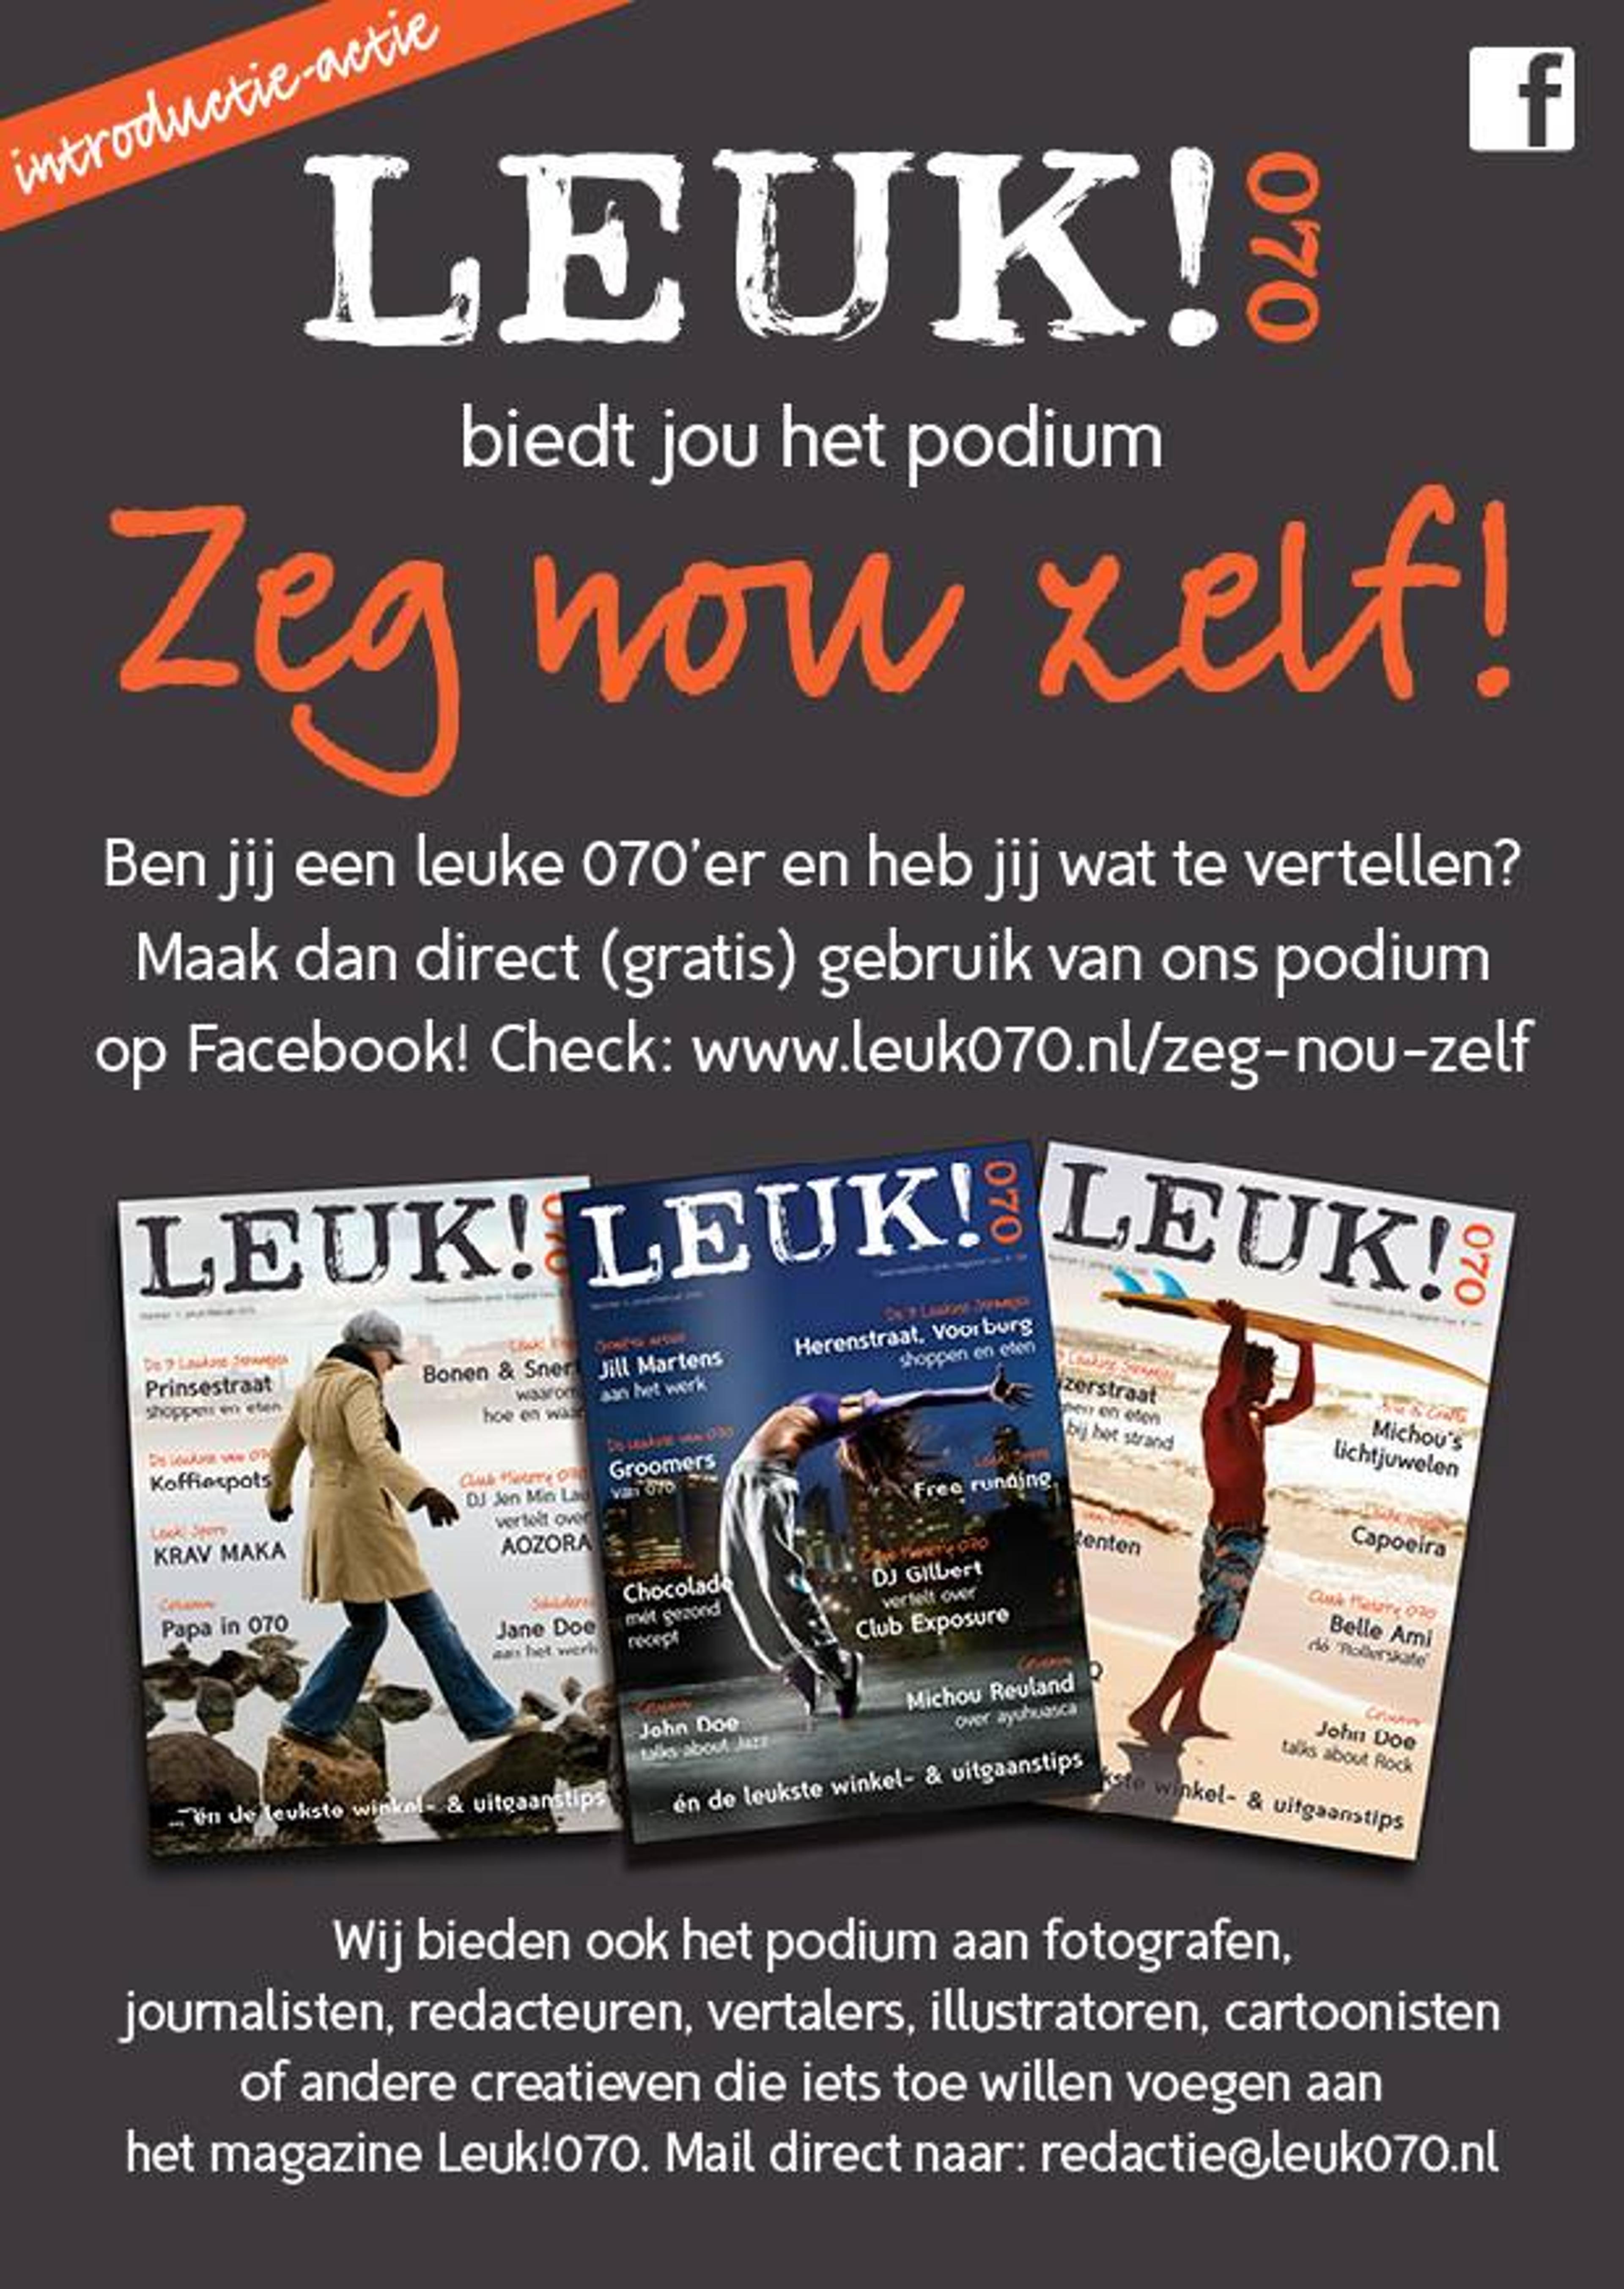 Den Haag krijgt in april een nieuw ‘feel-good magazine’: Leuk!070